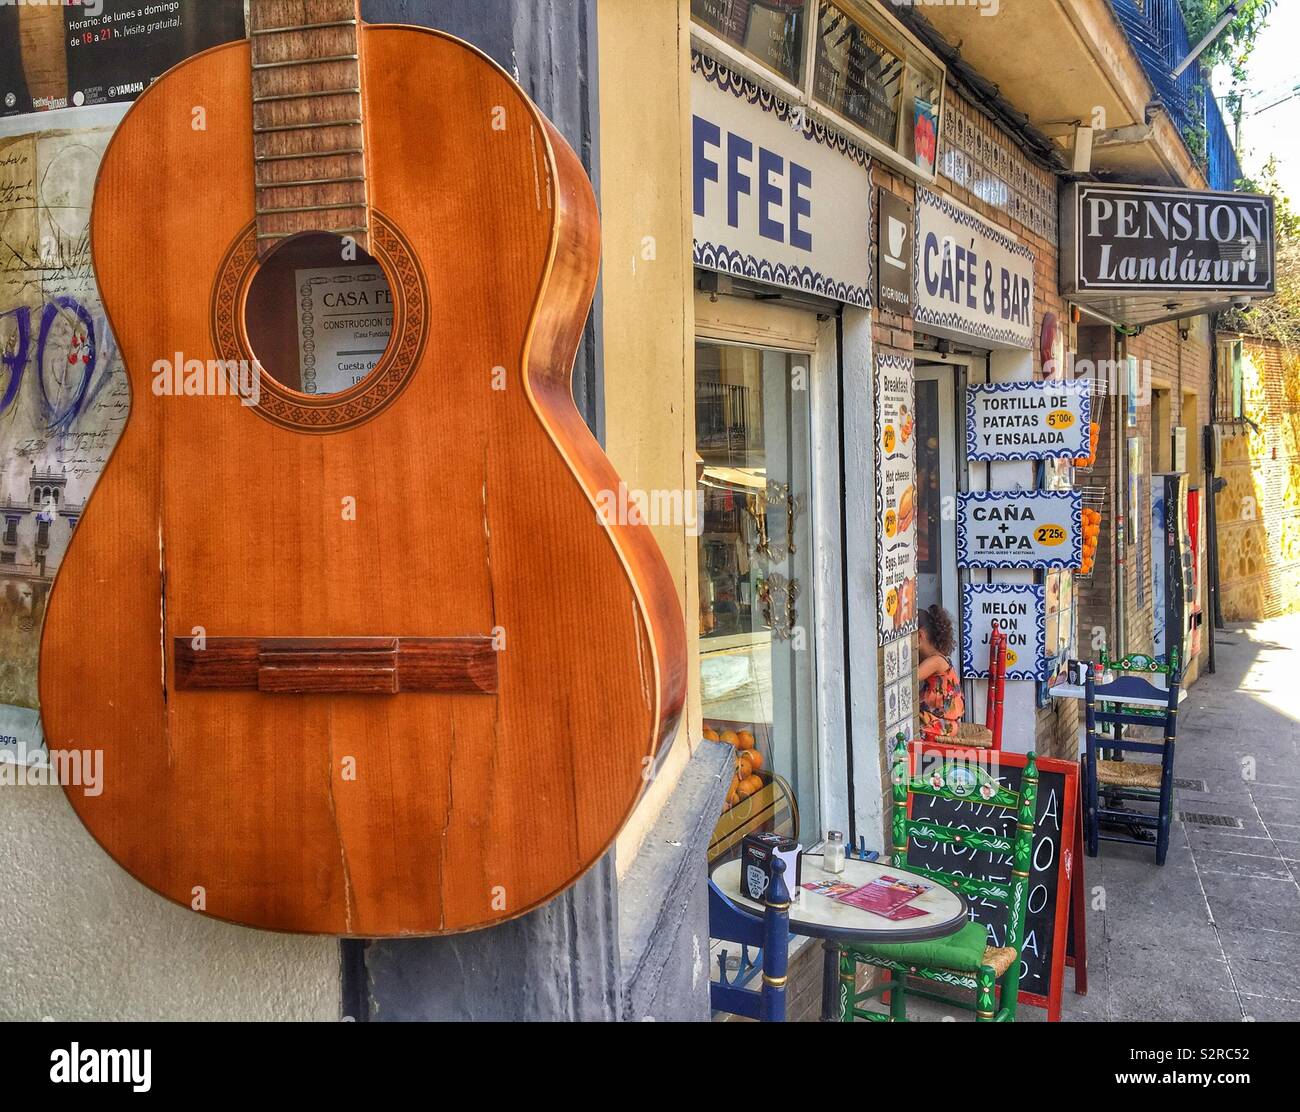 La guitare espagnole sur le mur de la maison à Grenade, Espagne Photo Stock  - Alamy